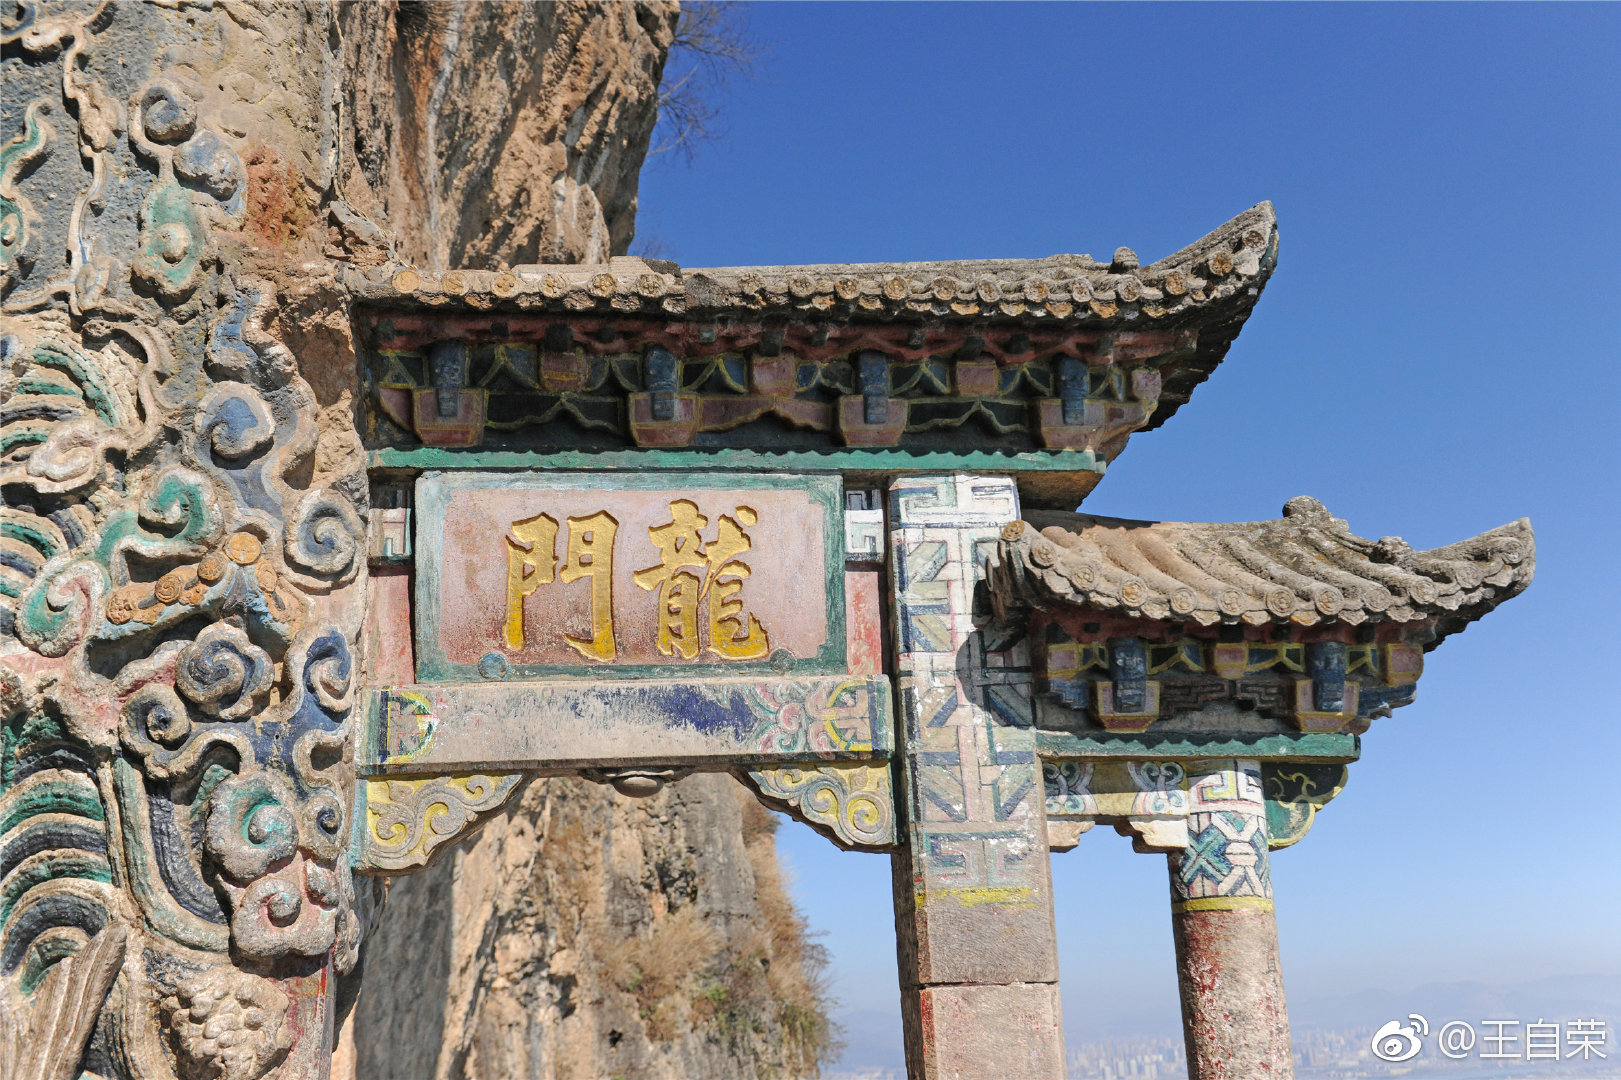 【携程攻略】龙门石窟龙门石窟景点,龙门石窟是中国四大石窟之一。它的历史极其悠久，从北魏开始开凿，全…